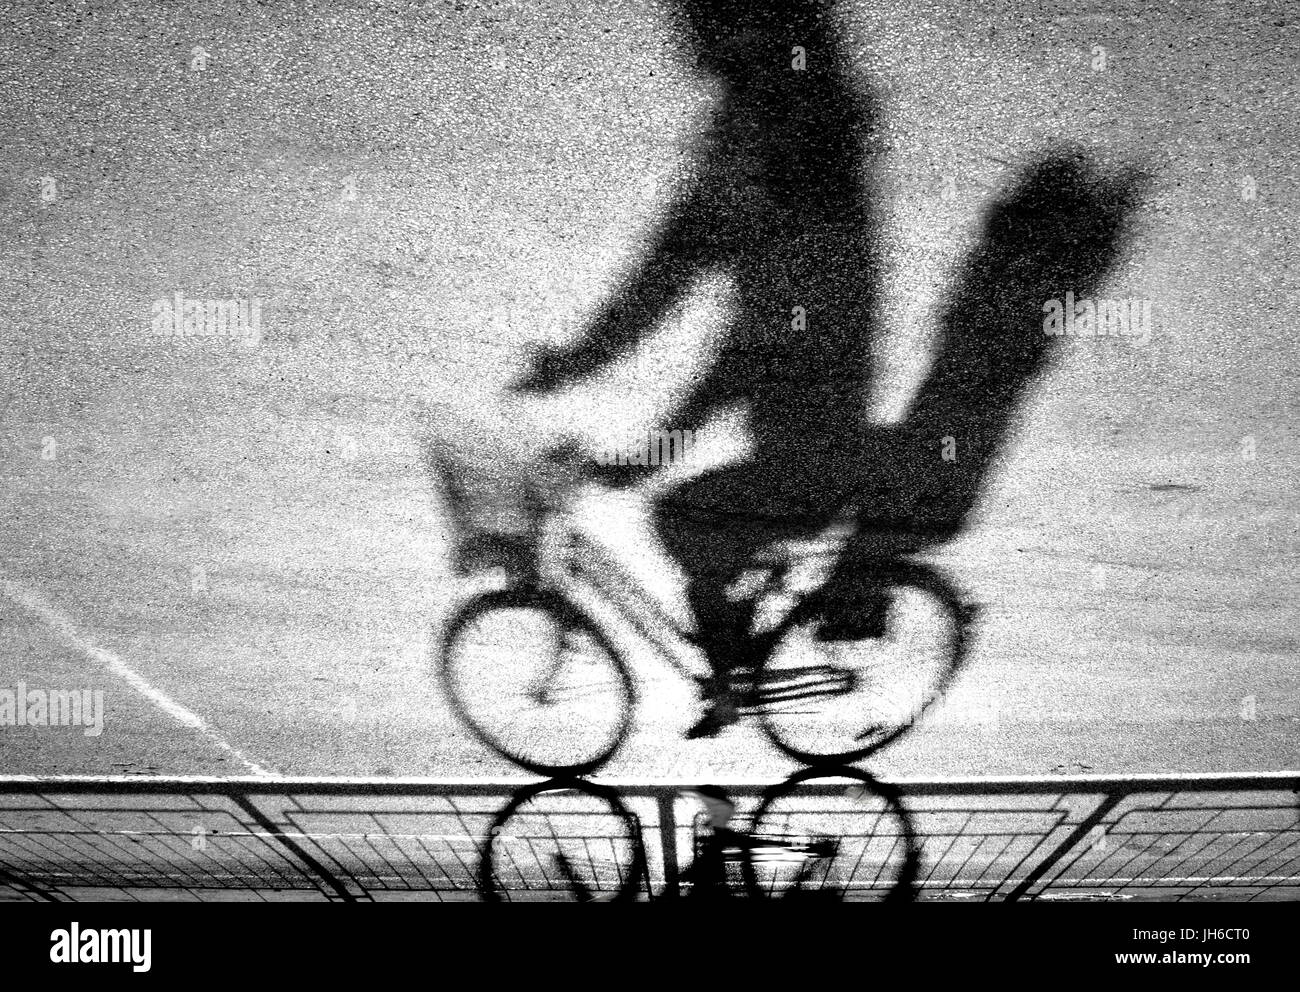 Sfocata ciclista con capretto sedile posteriore silhouette e ombra su un protetto percorso in bicicletta in bianco e nero a testa in giù Foto Stock